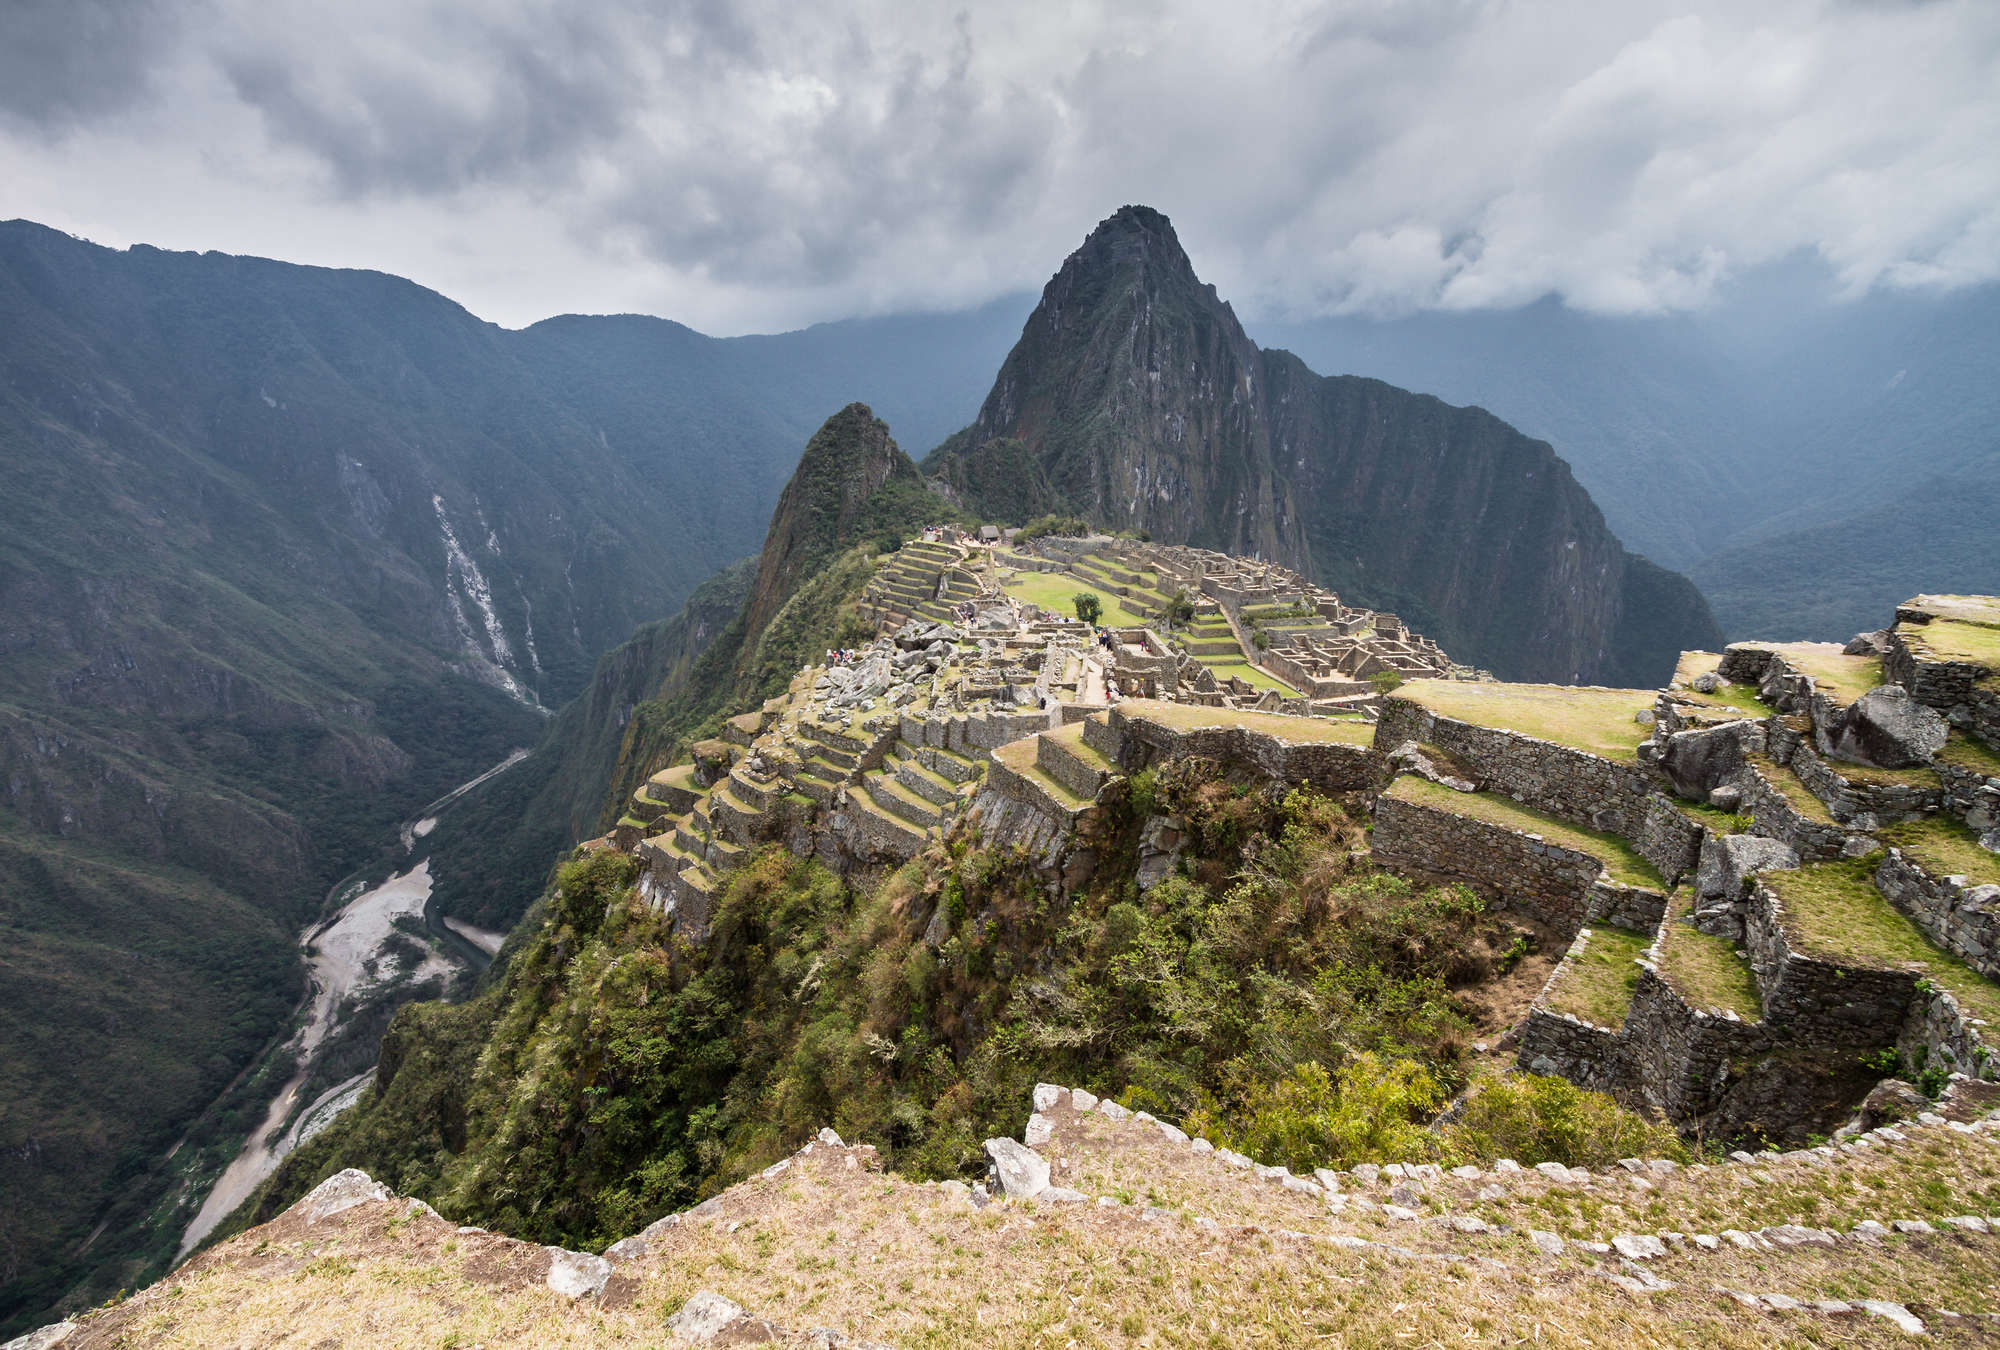             Muurschildering schilderachtig valleizicht van Machu Picchu
        